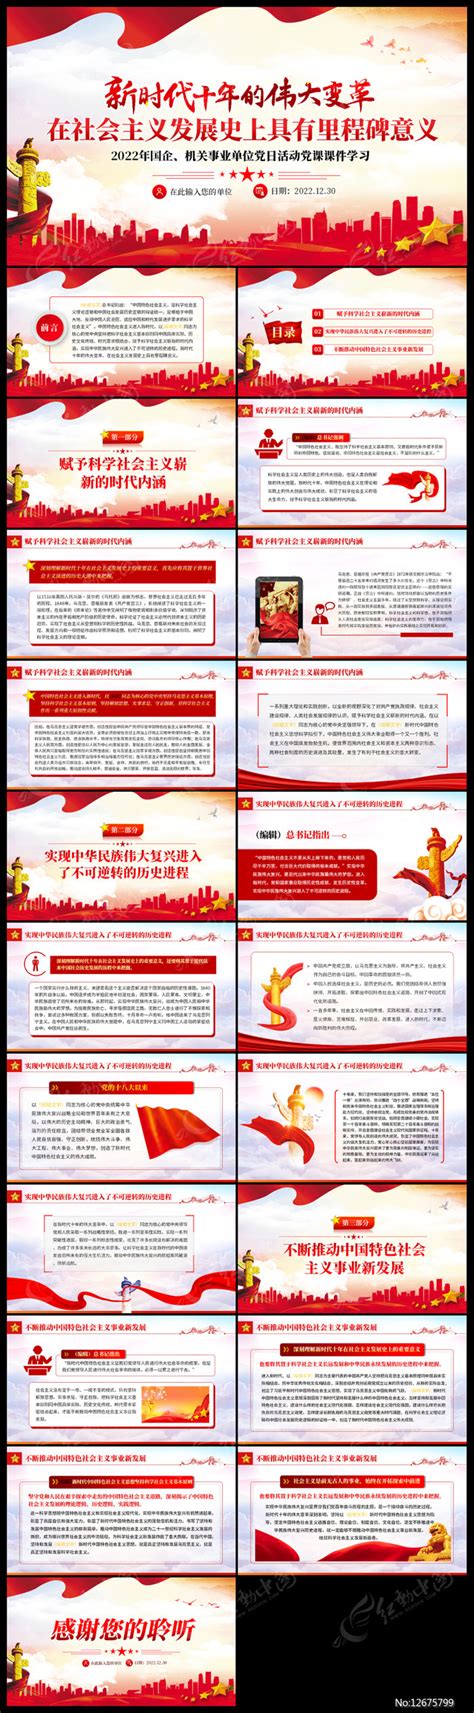 新时代十年的伟大变革的里程碑意义ppt下载_红动中国